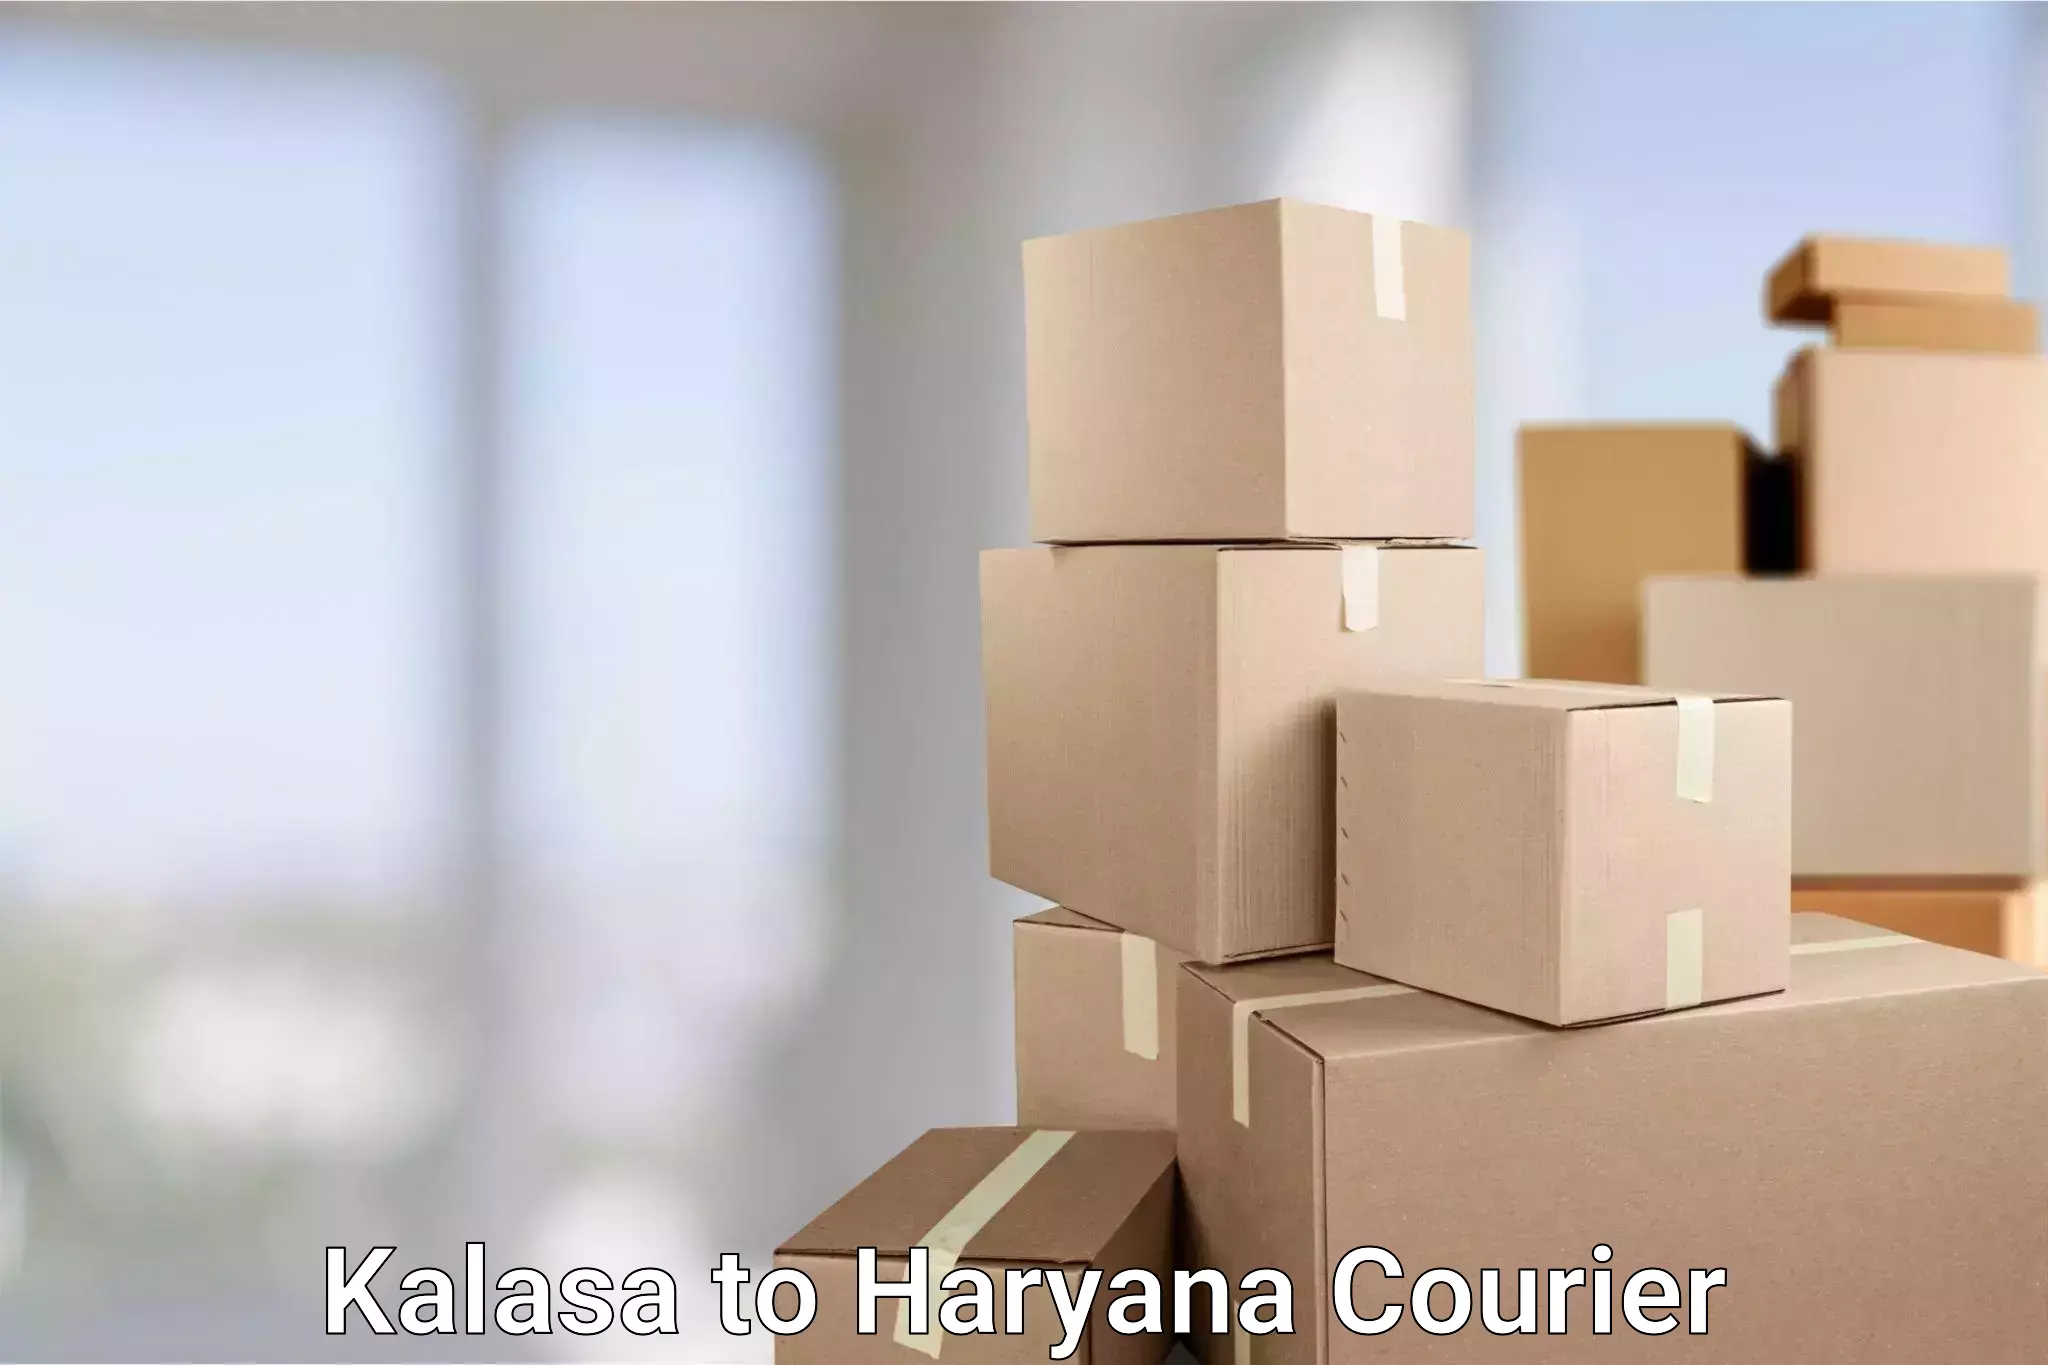 Nationwide shipping coverage Kalasa to Gurgaon